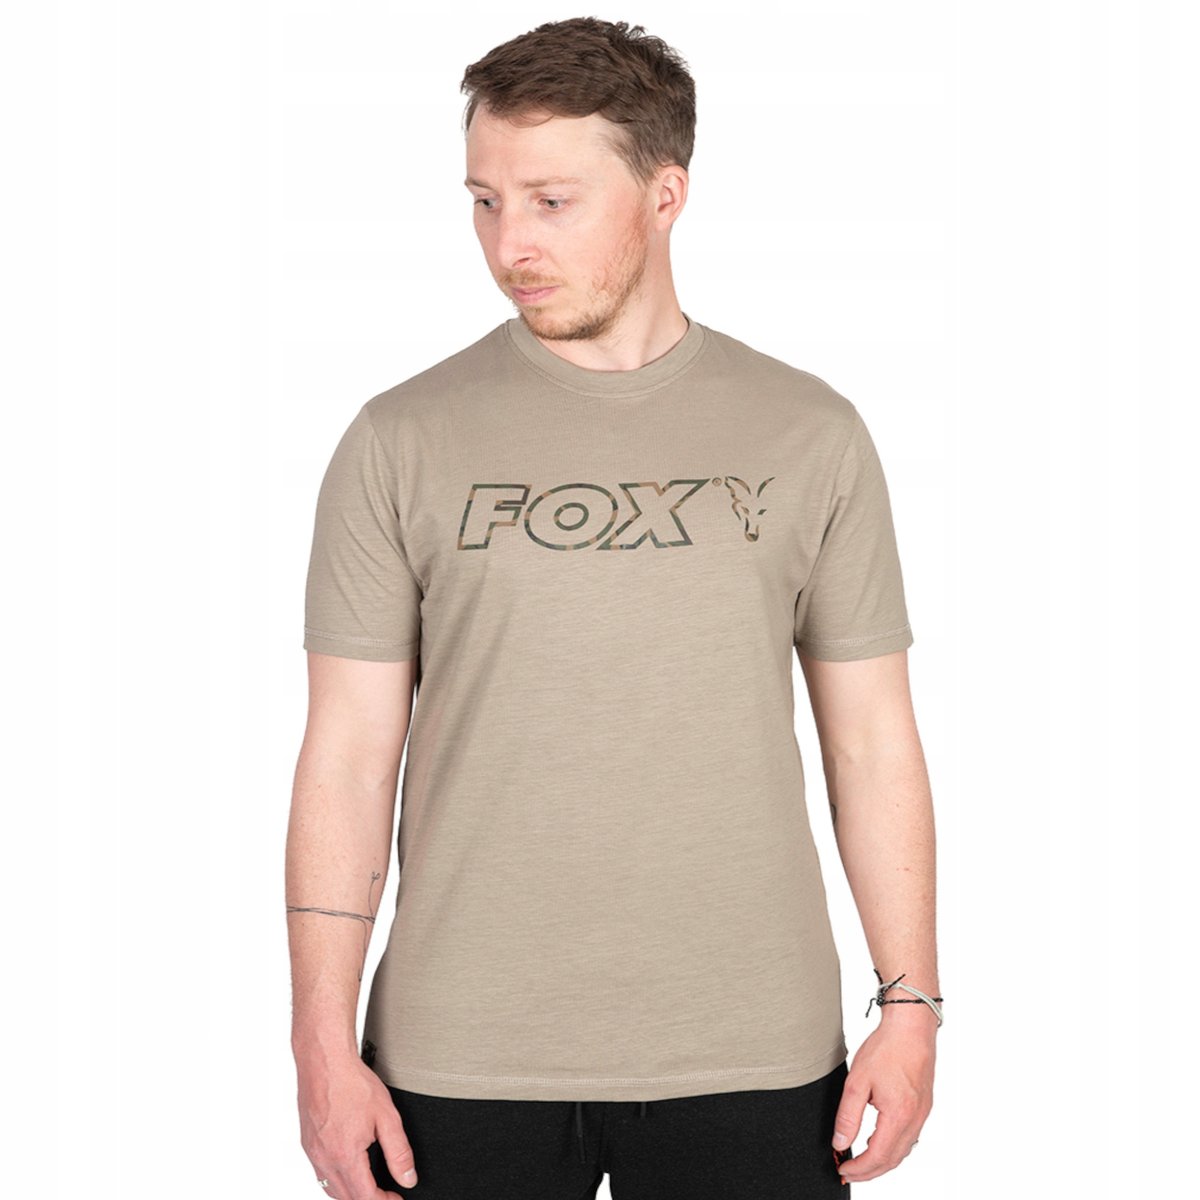 Zdjęcia - Odzież wędkarska Fox Koszulka Wędkarska T-Shirt  Ltd Lw Khaki Marl T R. 2Xl 